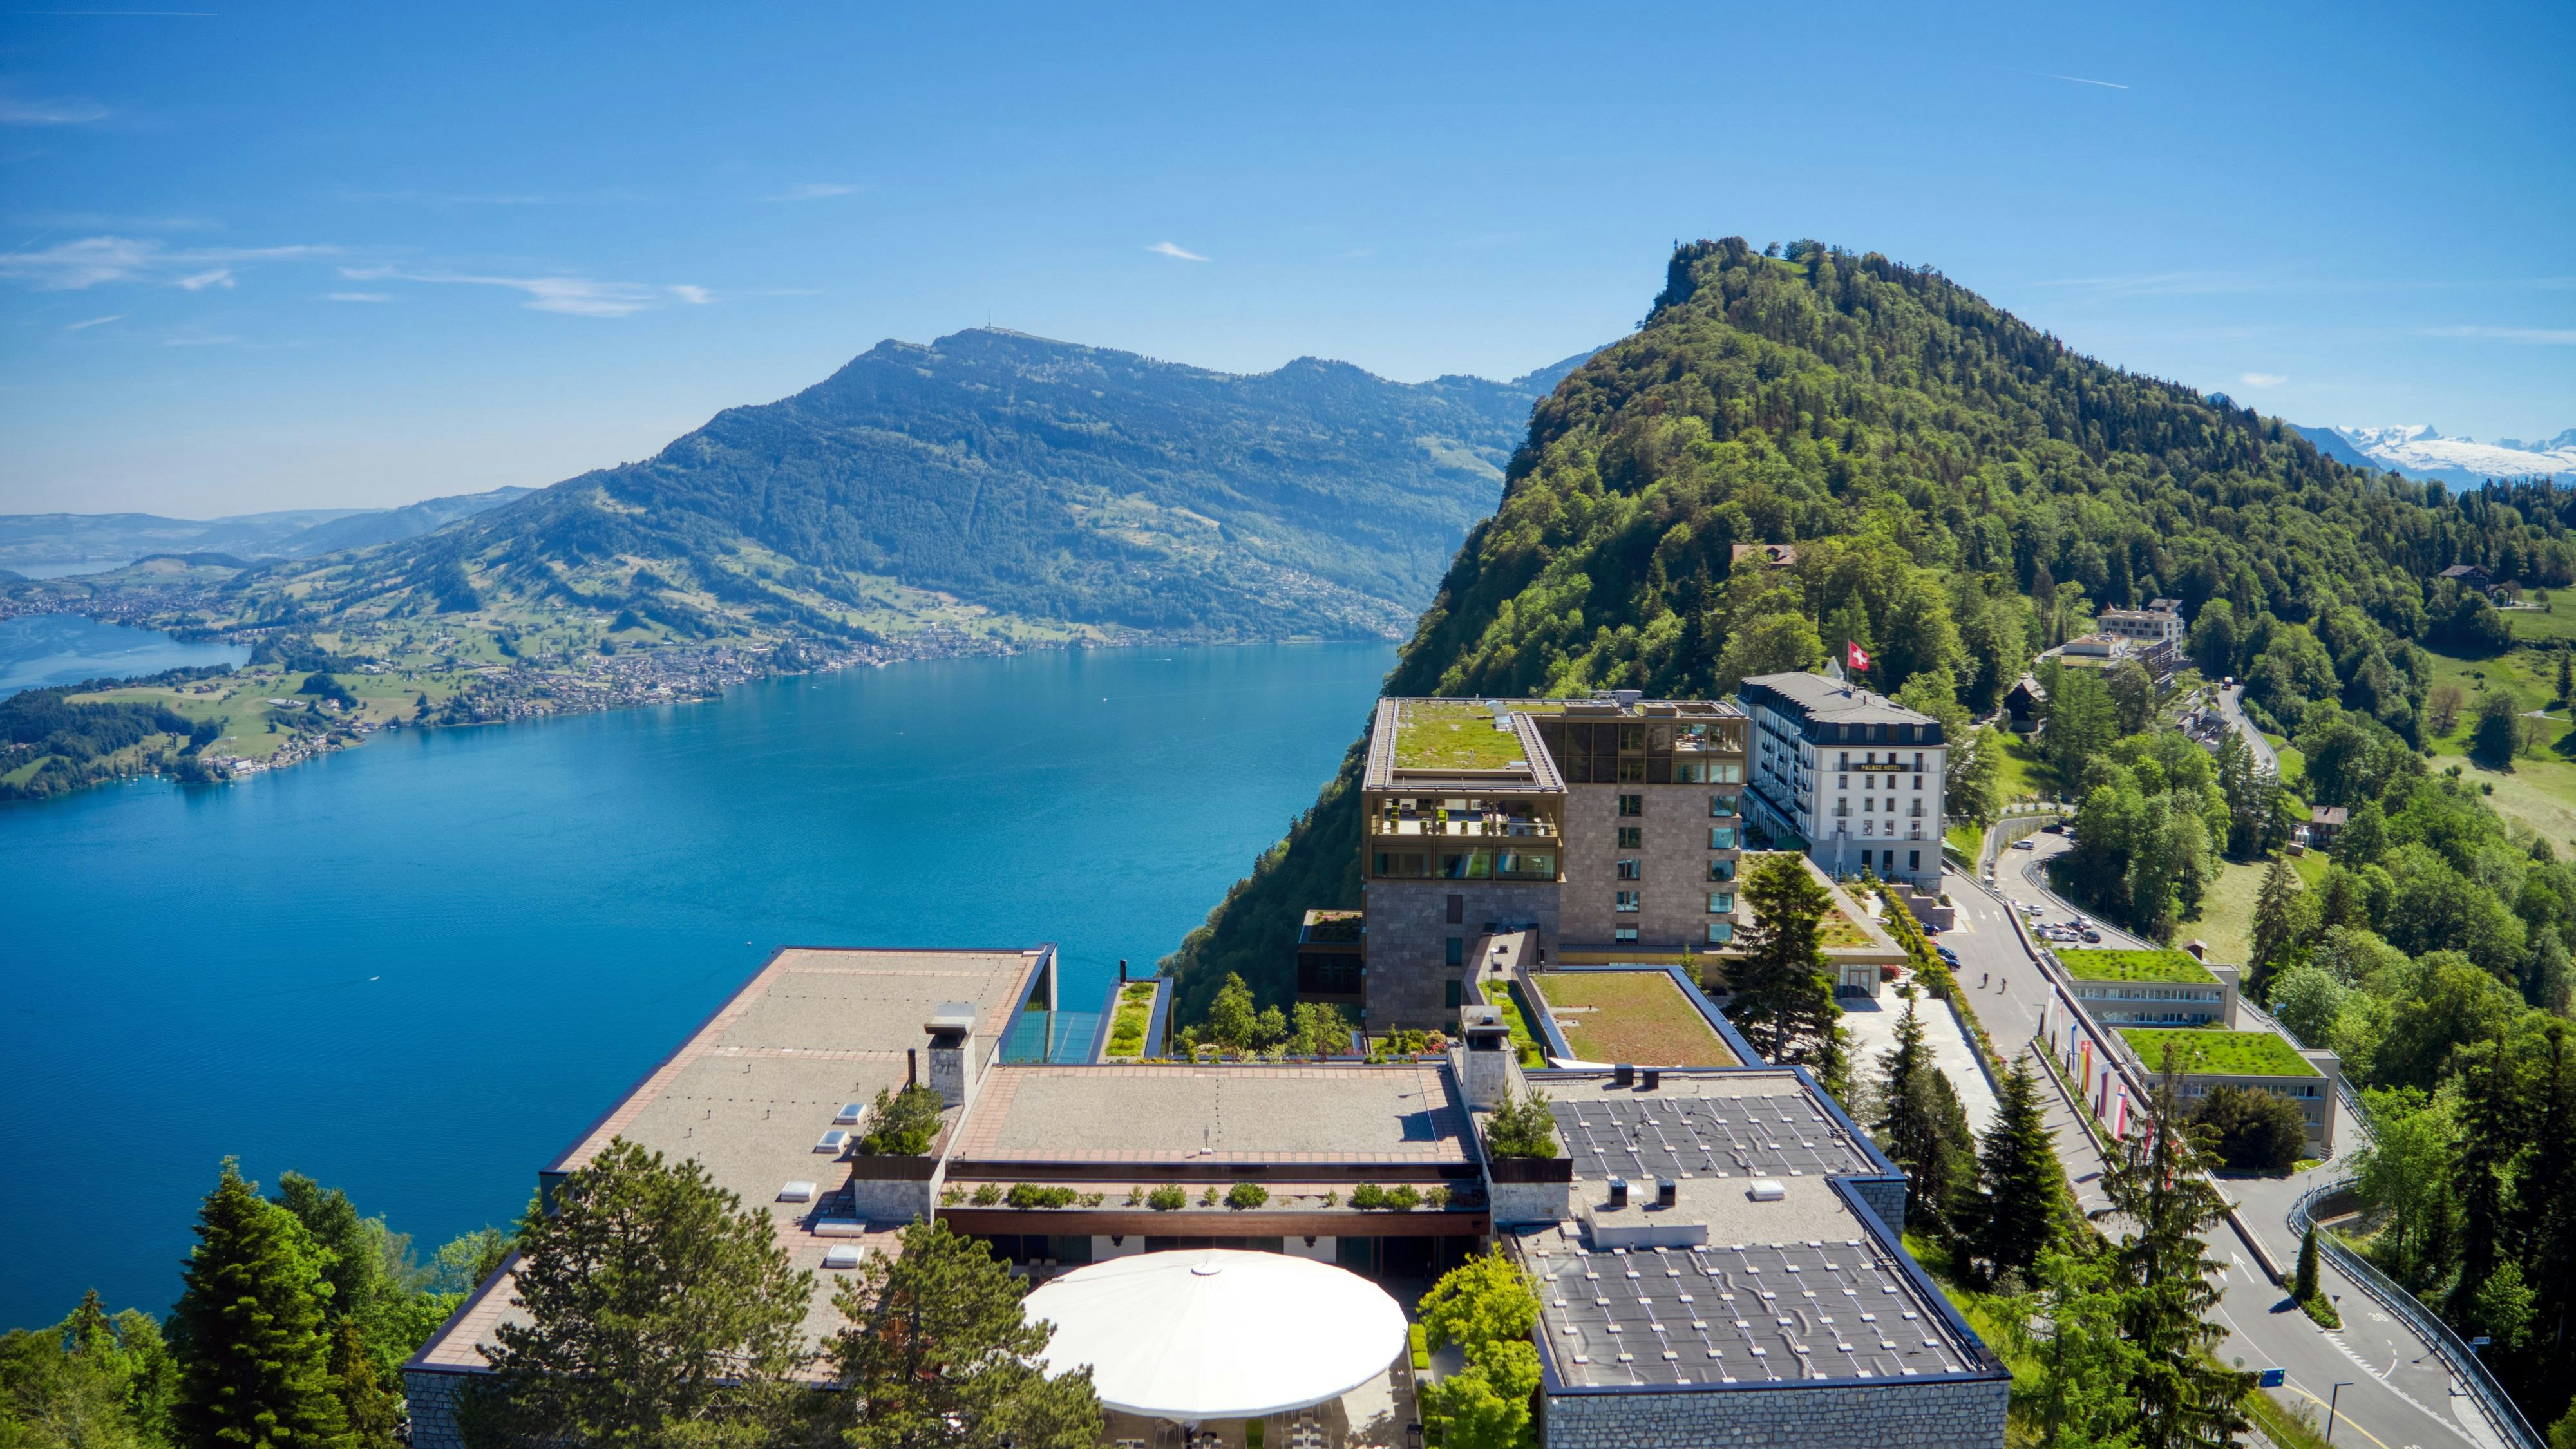 Blick auf das Schweizer Luxushotel "Bürgenstock" bei Luzern am Vierwaldstättersee